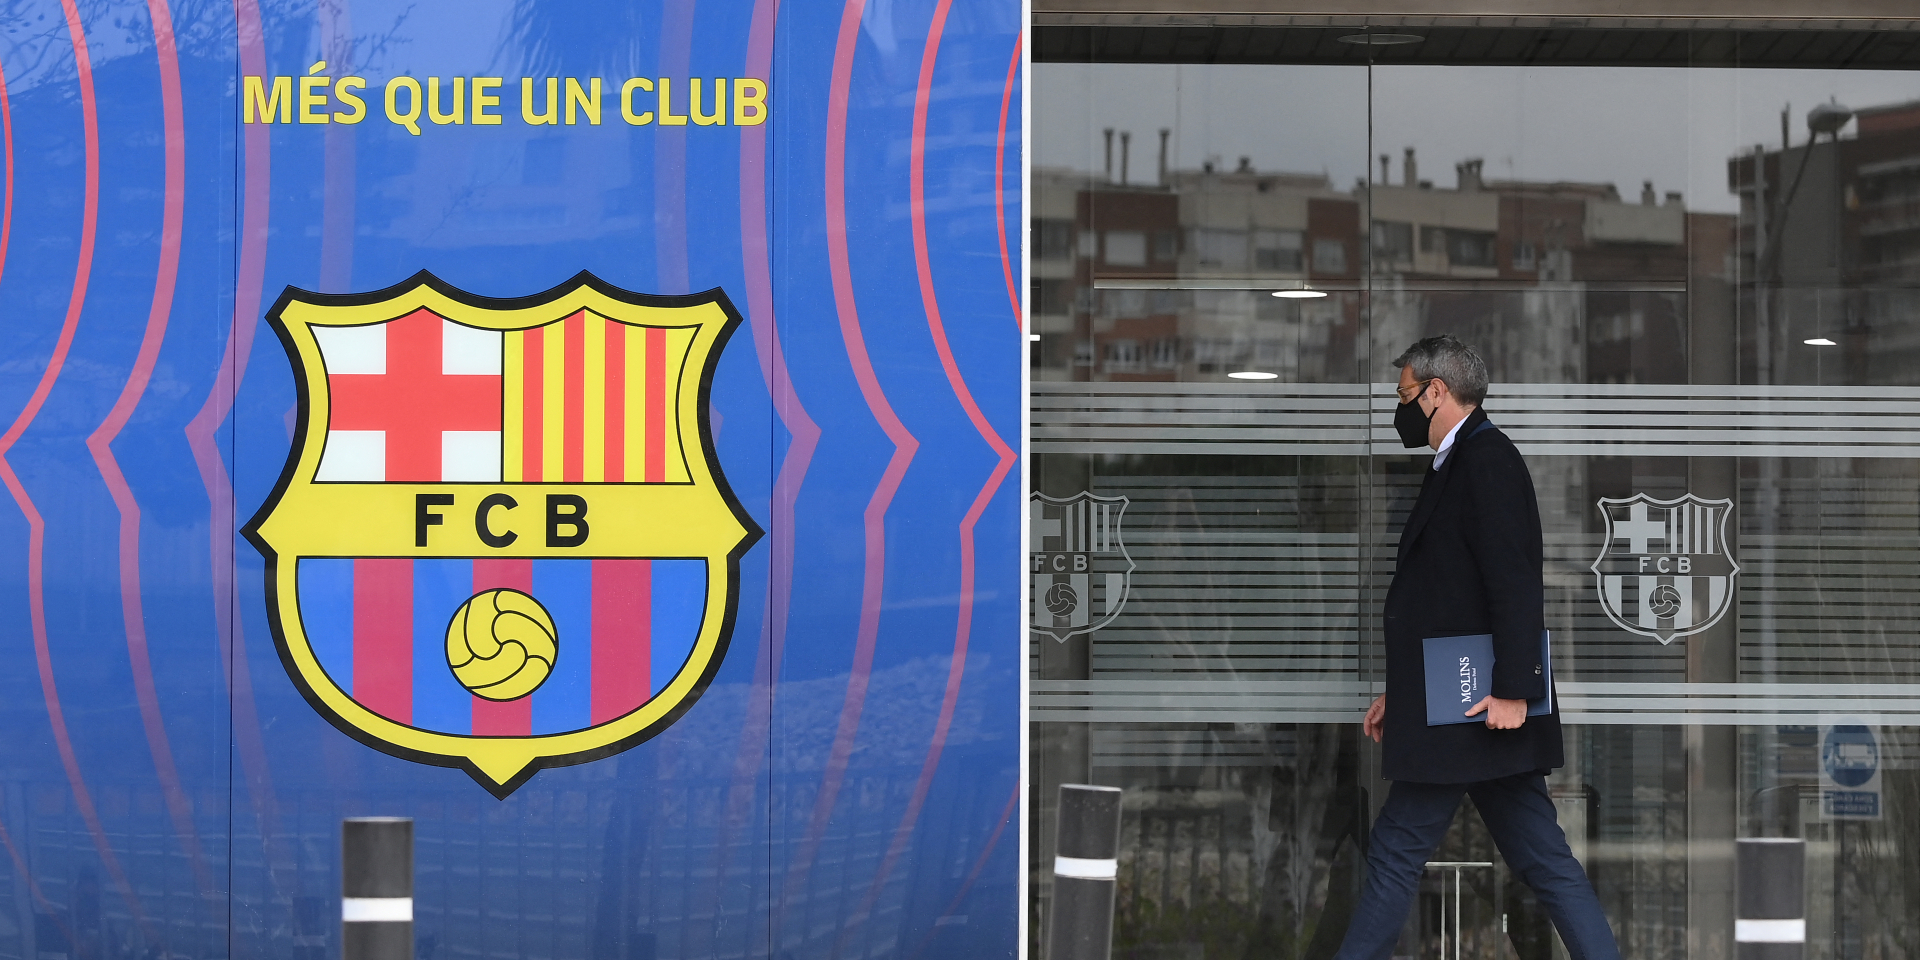 Football plusieurs arrestations apres les perquisitions au FC Barcelone